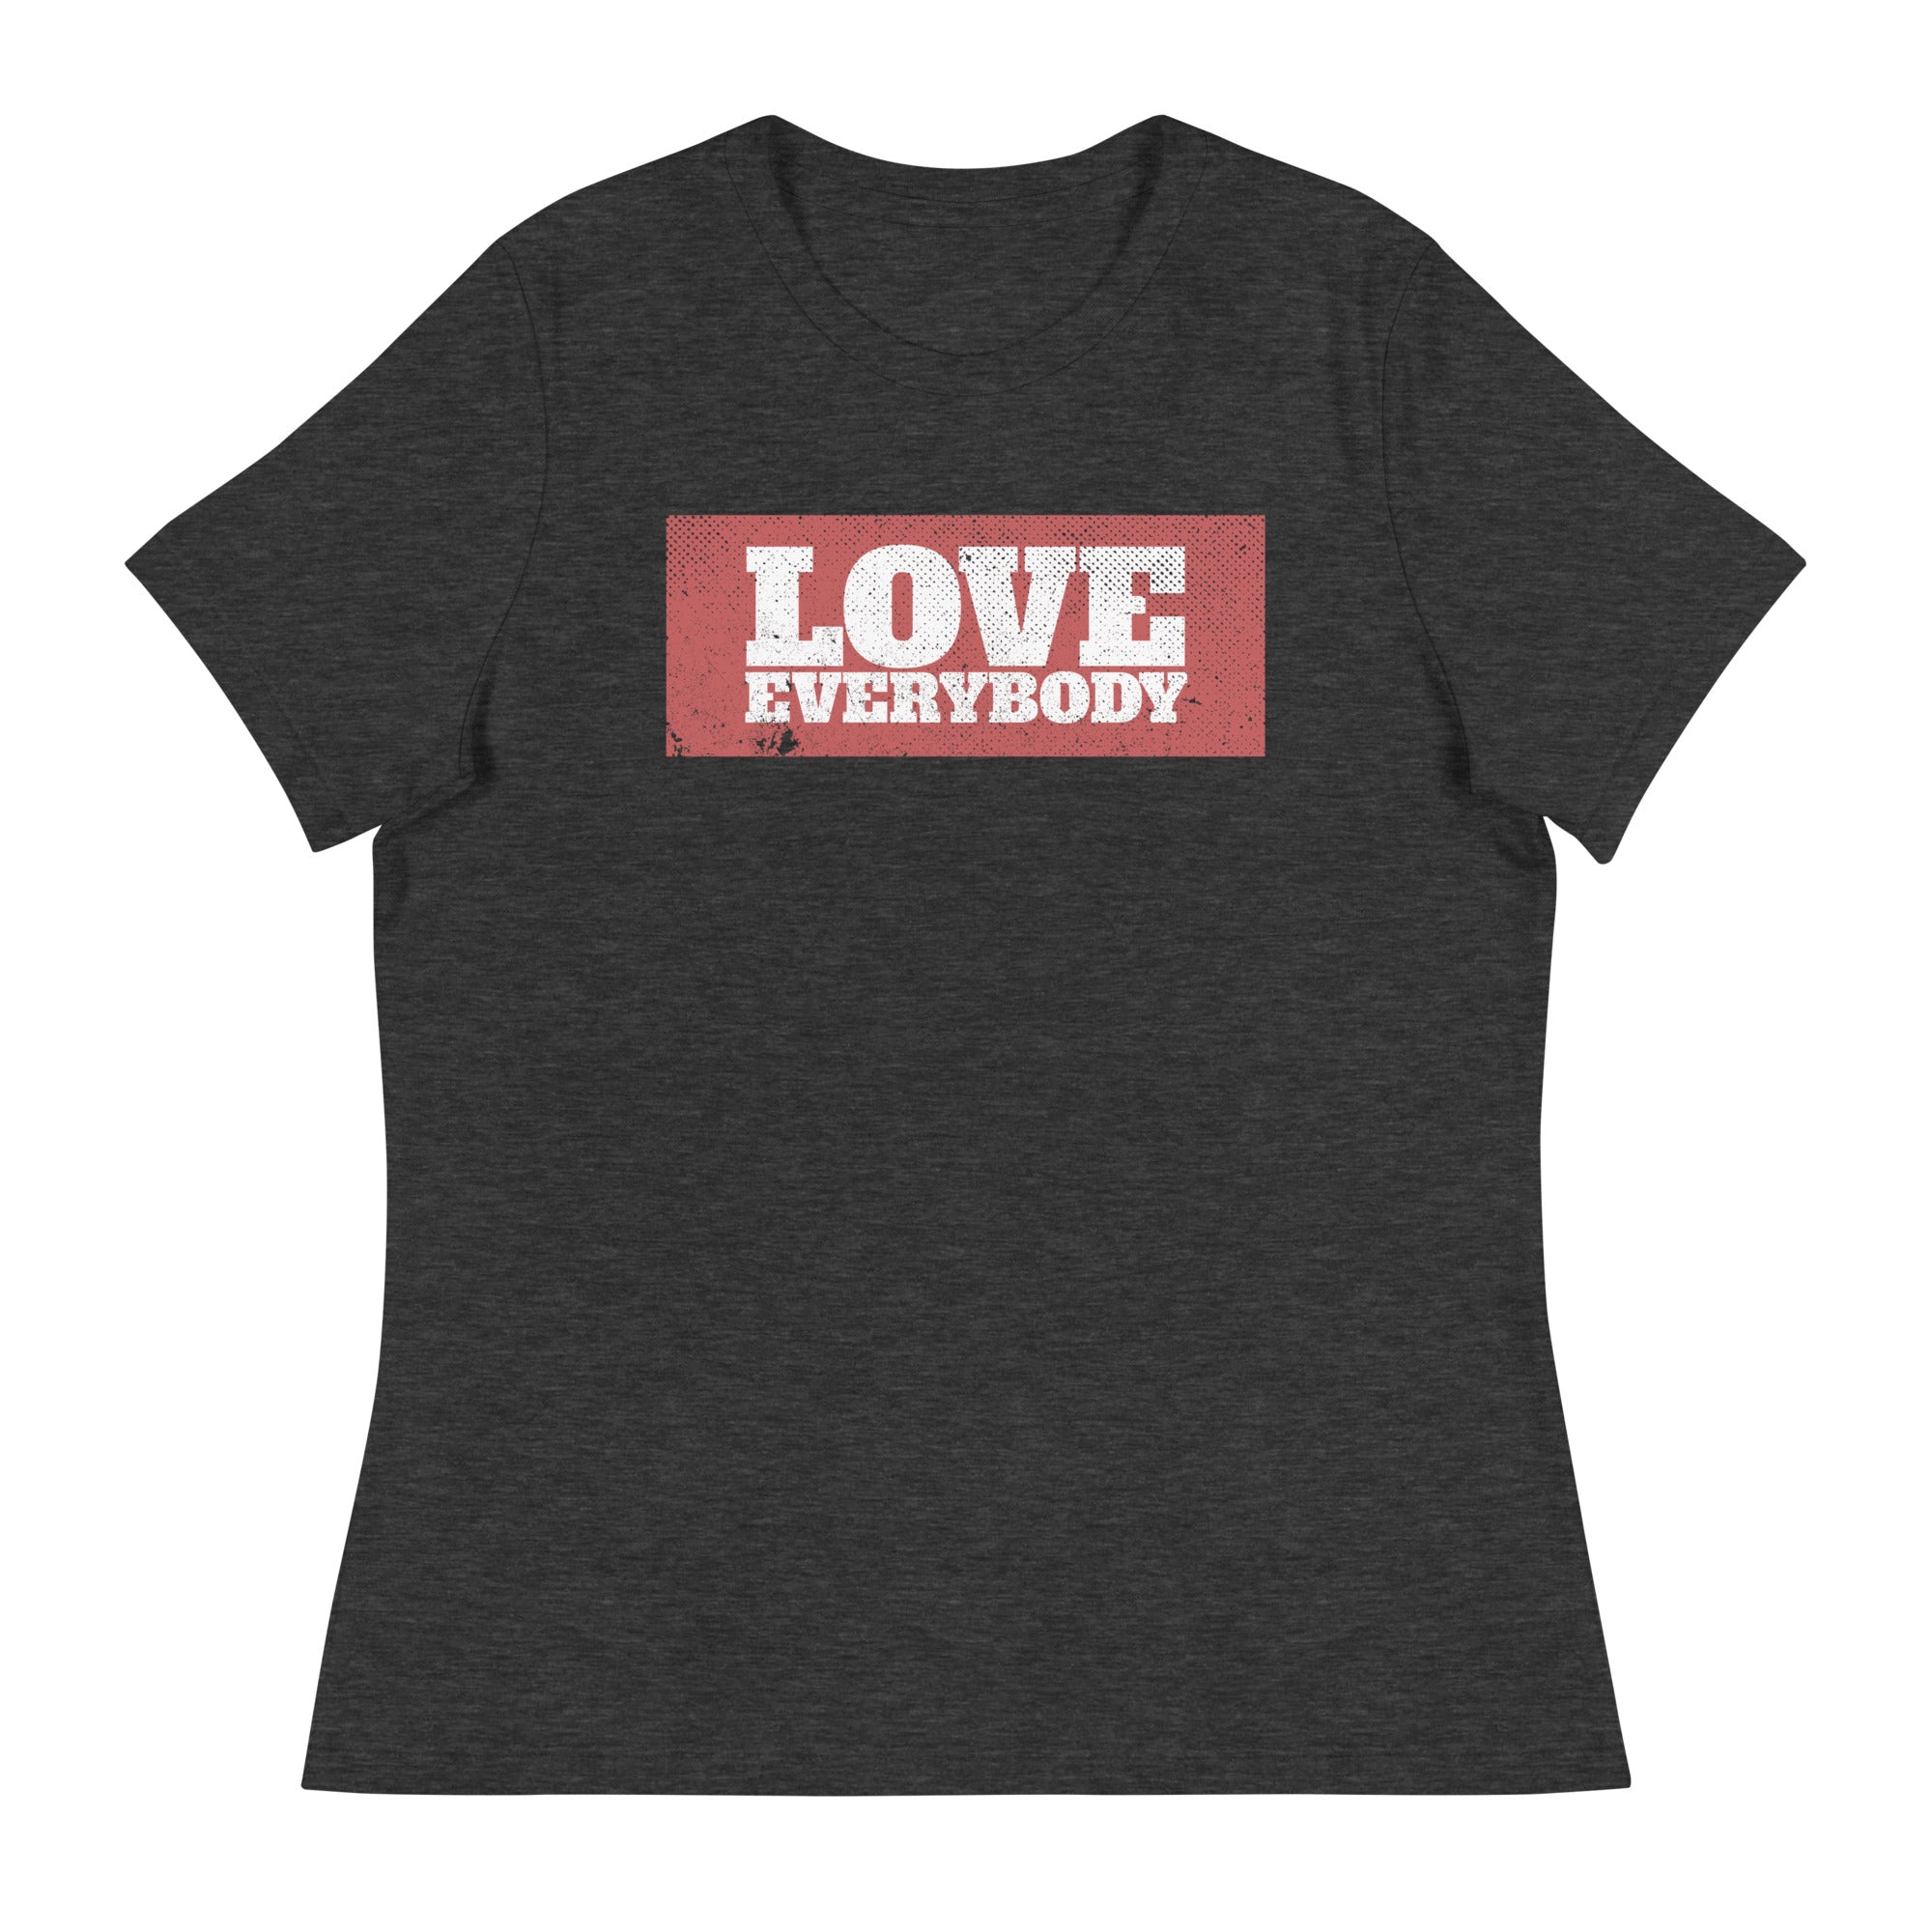 LOVE EVERYBODY - Women's T-Shirt